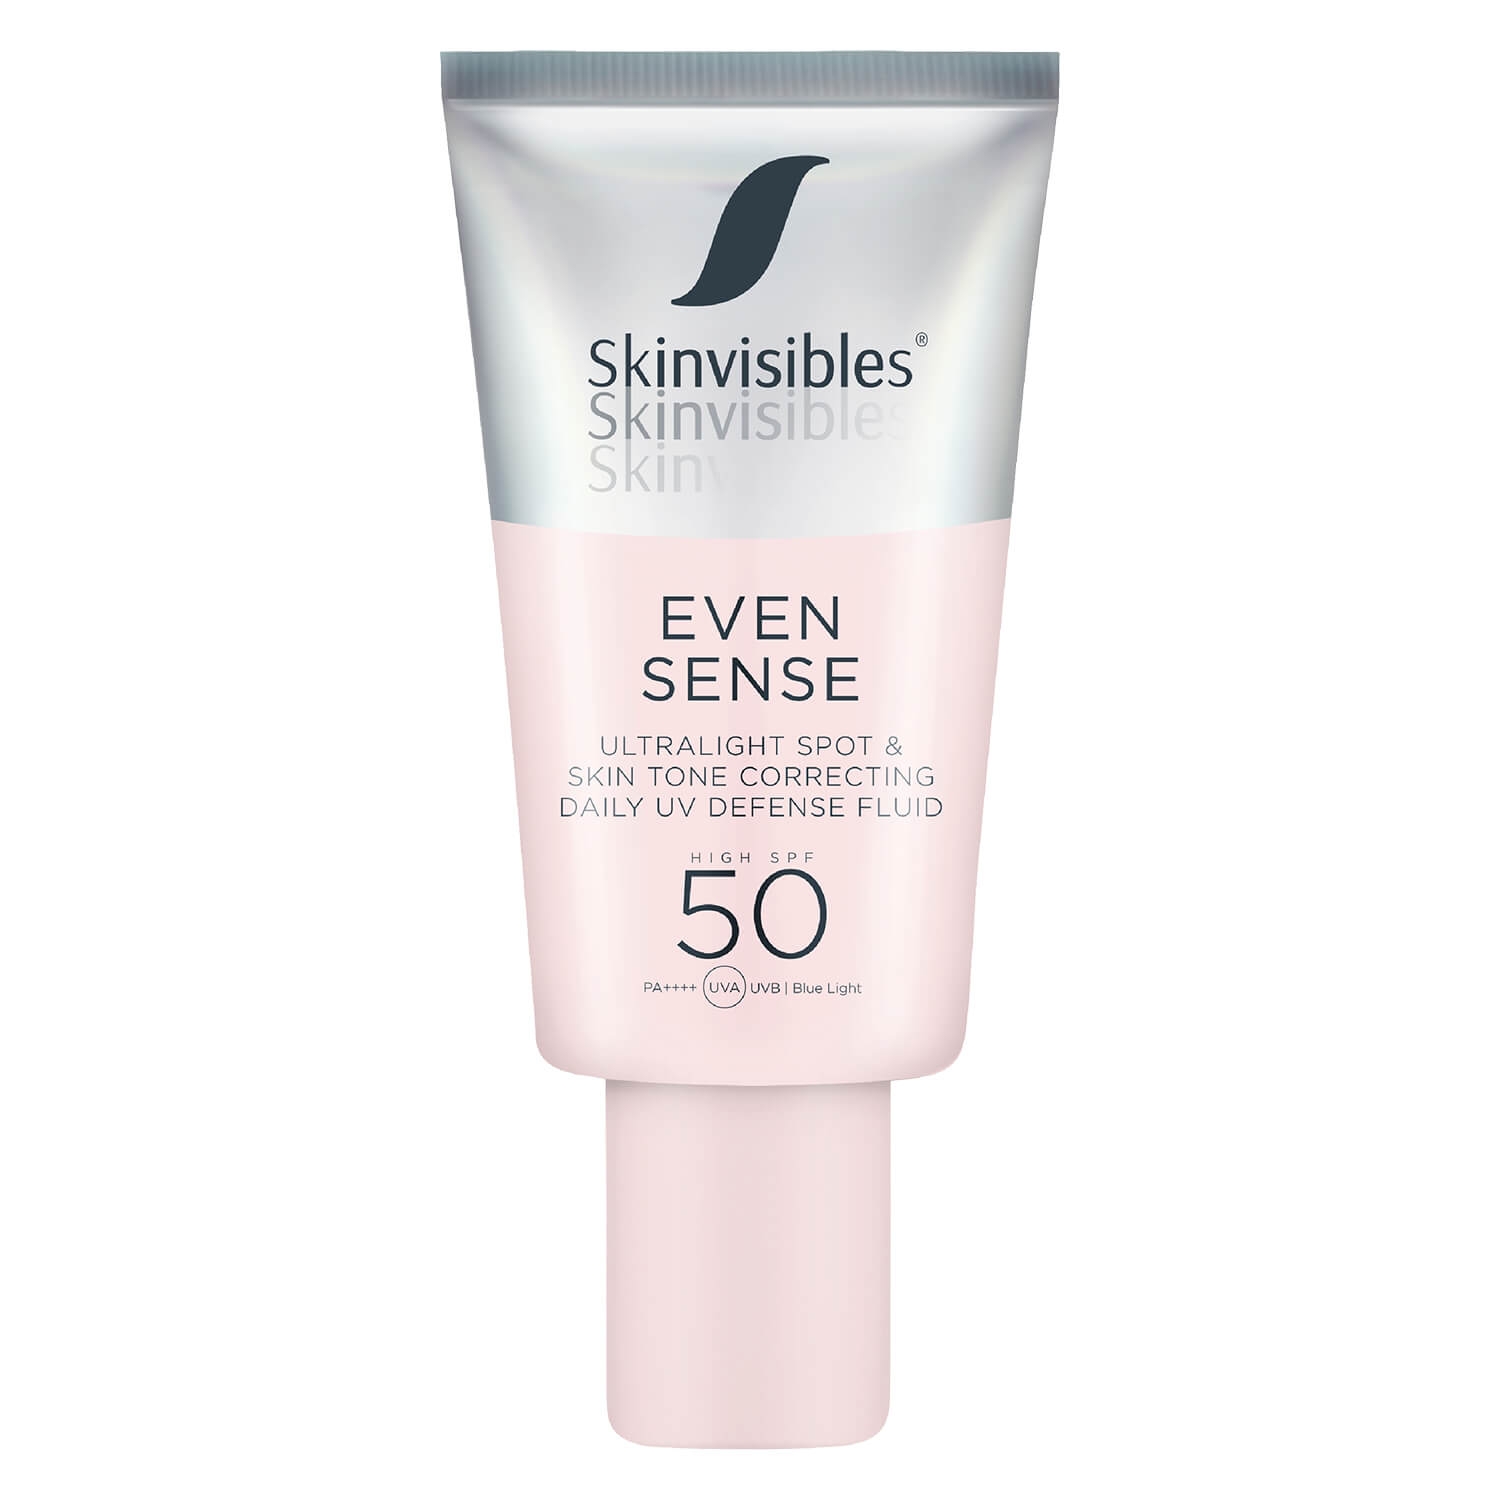 Produktbild von Skinvisibles - Even Sense Fluid SPF 50